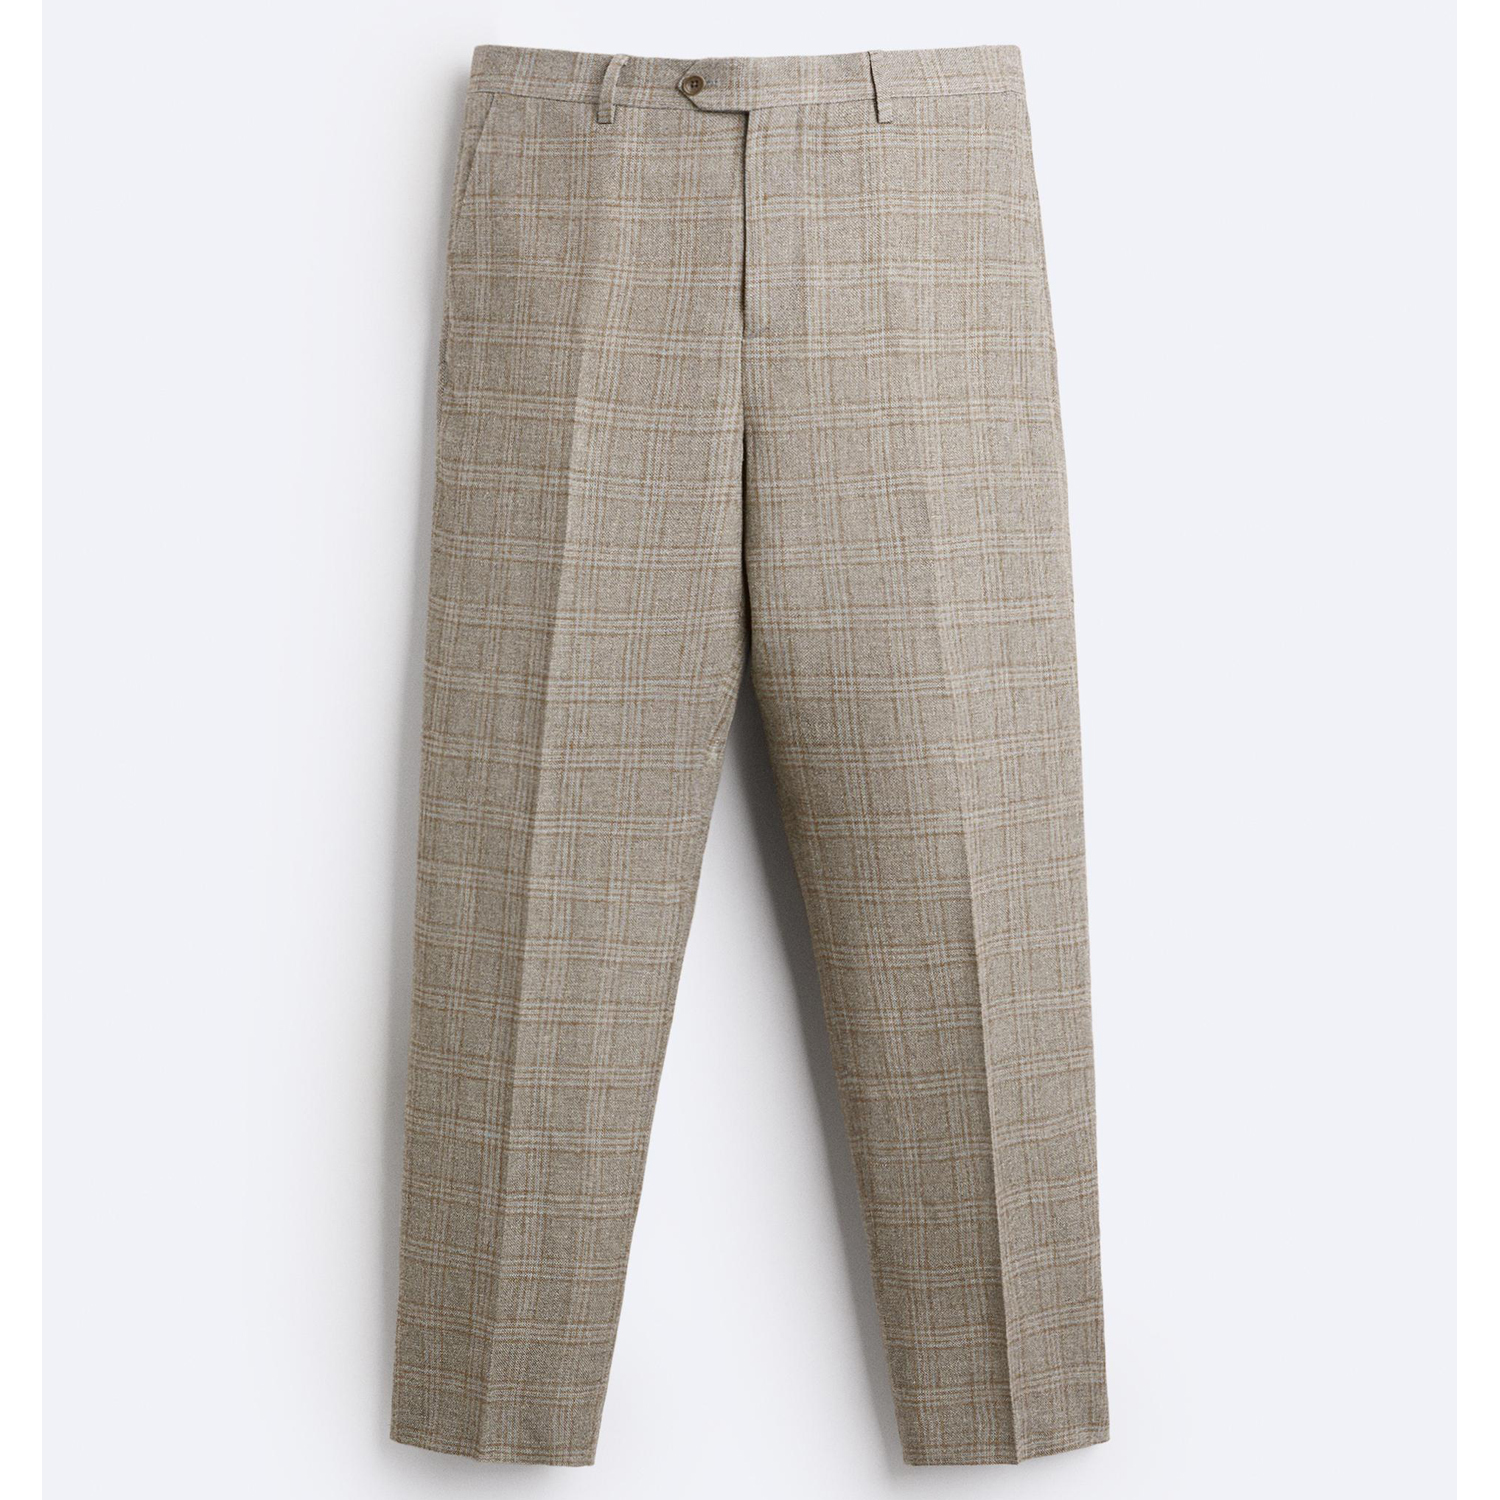 Брюки Zara Check Viscose - Linen Suit, серый/светло-коричневый брюки tu классического кроя 42 44 размер новые